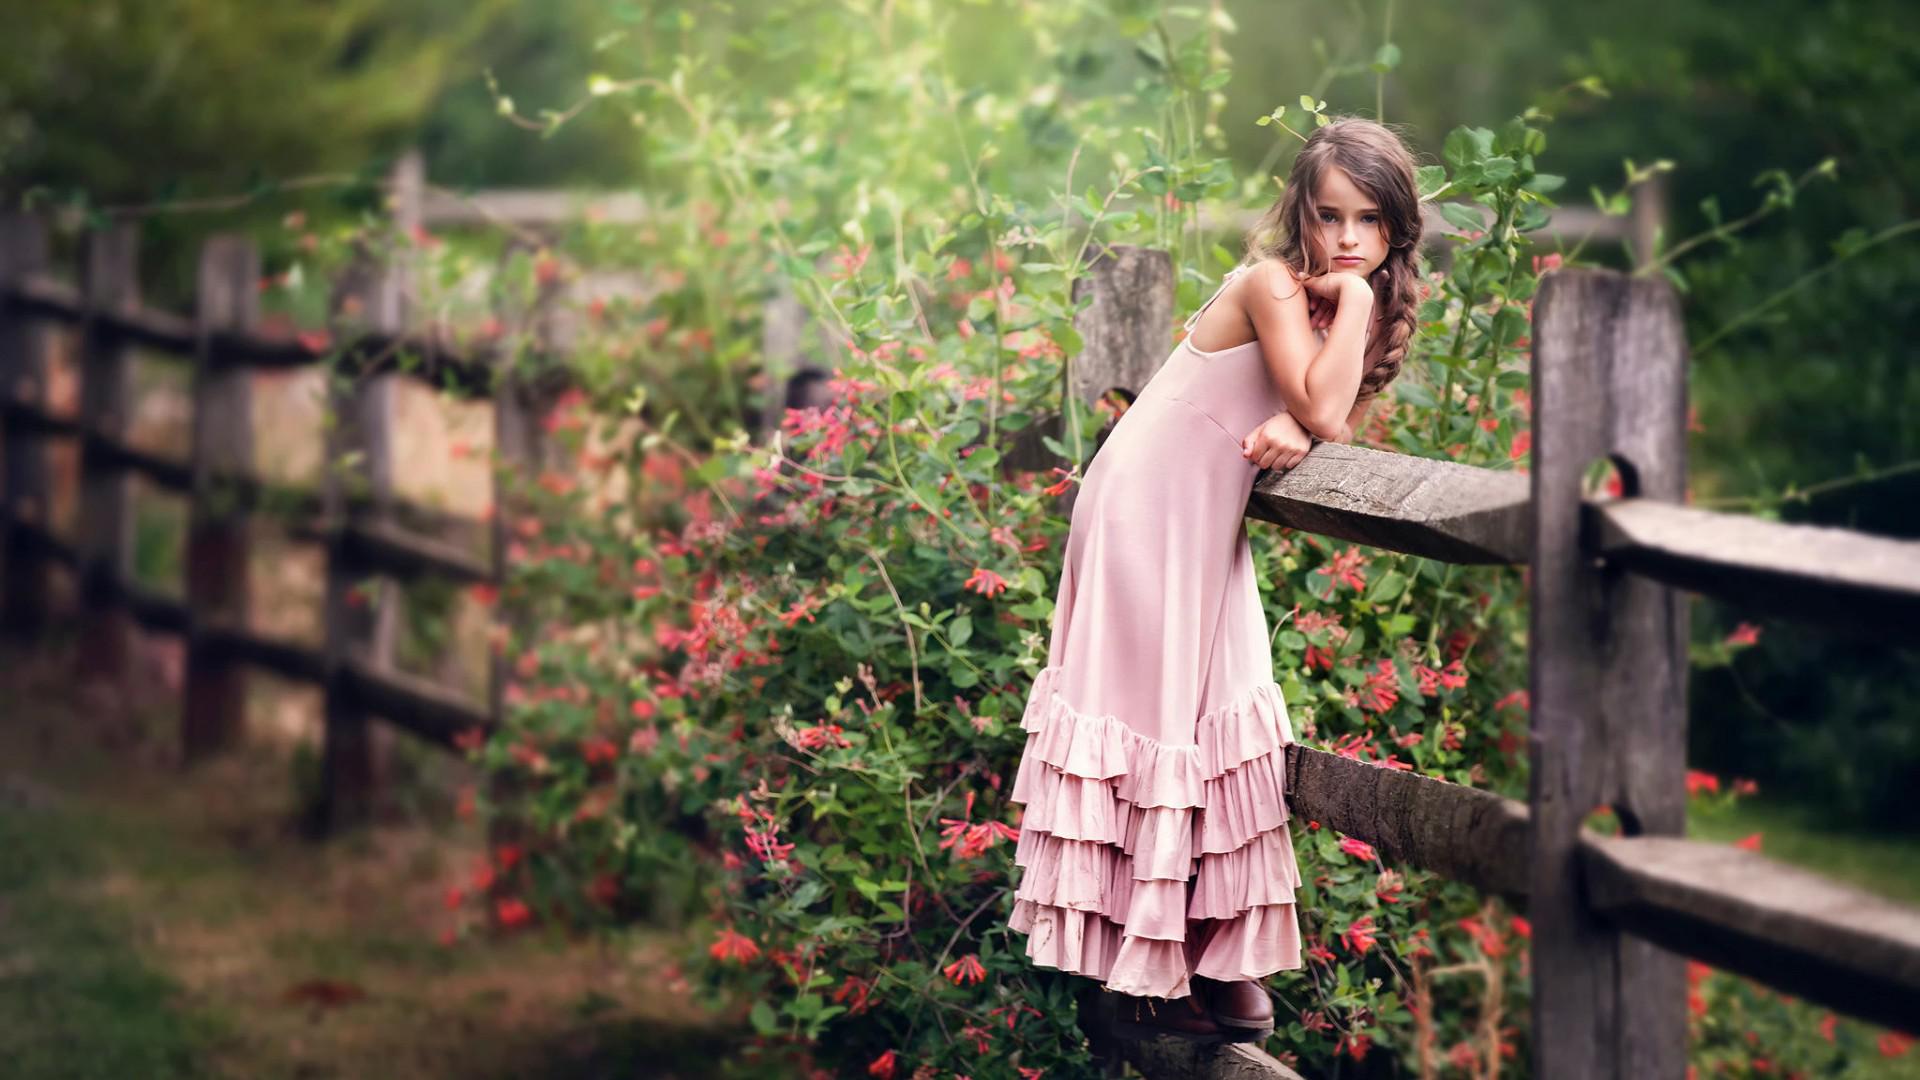 The little girl, pink skirt, fence, flowers, beautiful desktop wallpaper |  nature and landscape | Wallpaper Better